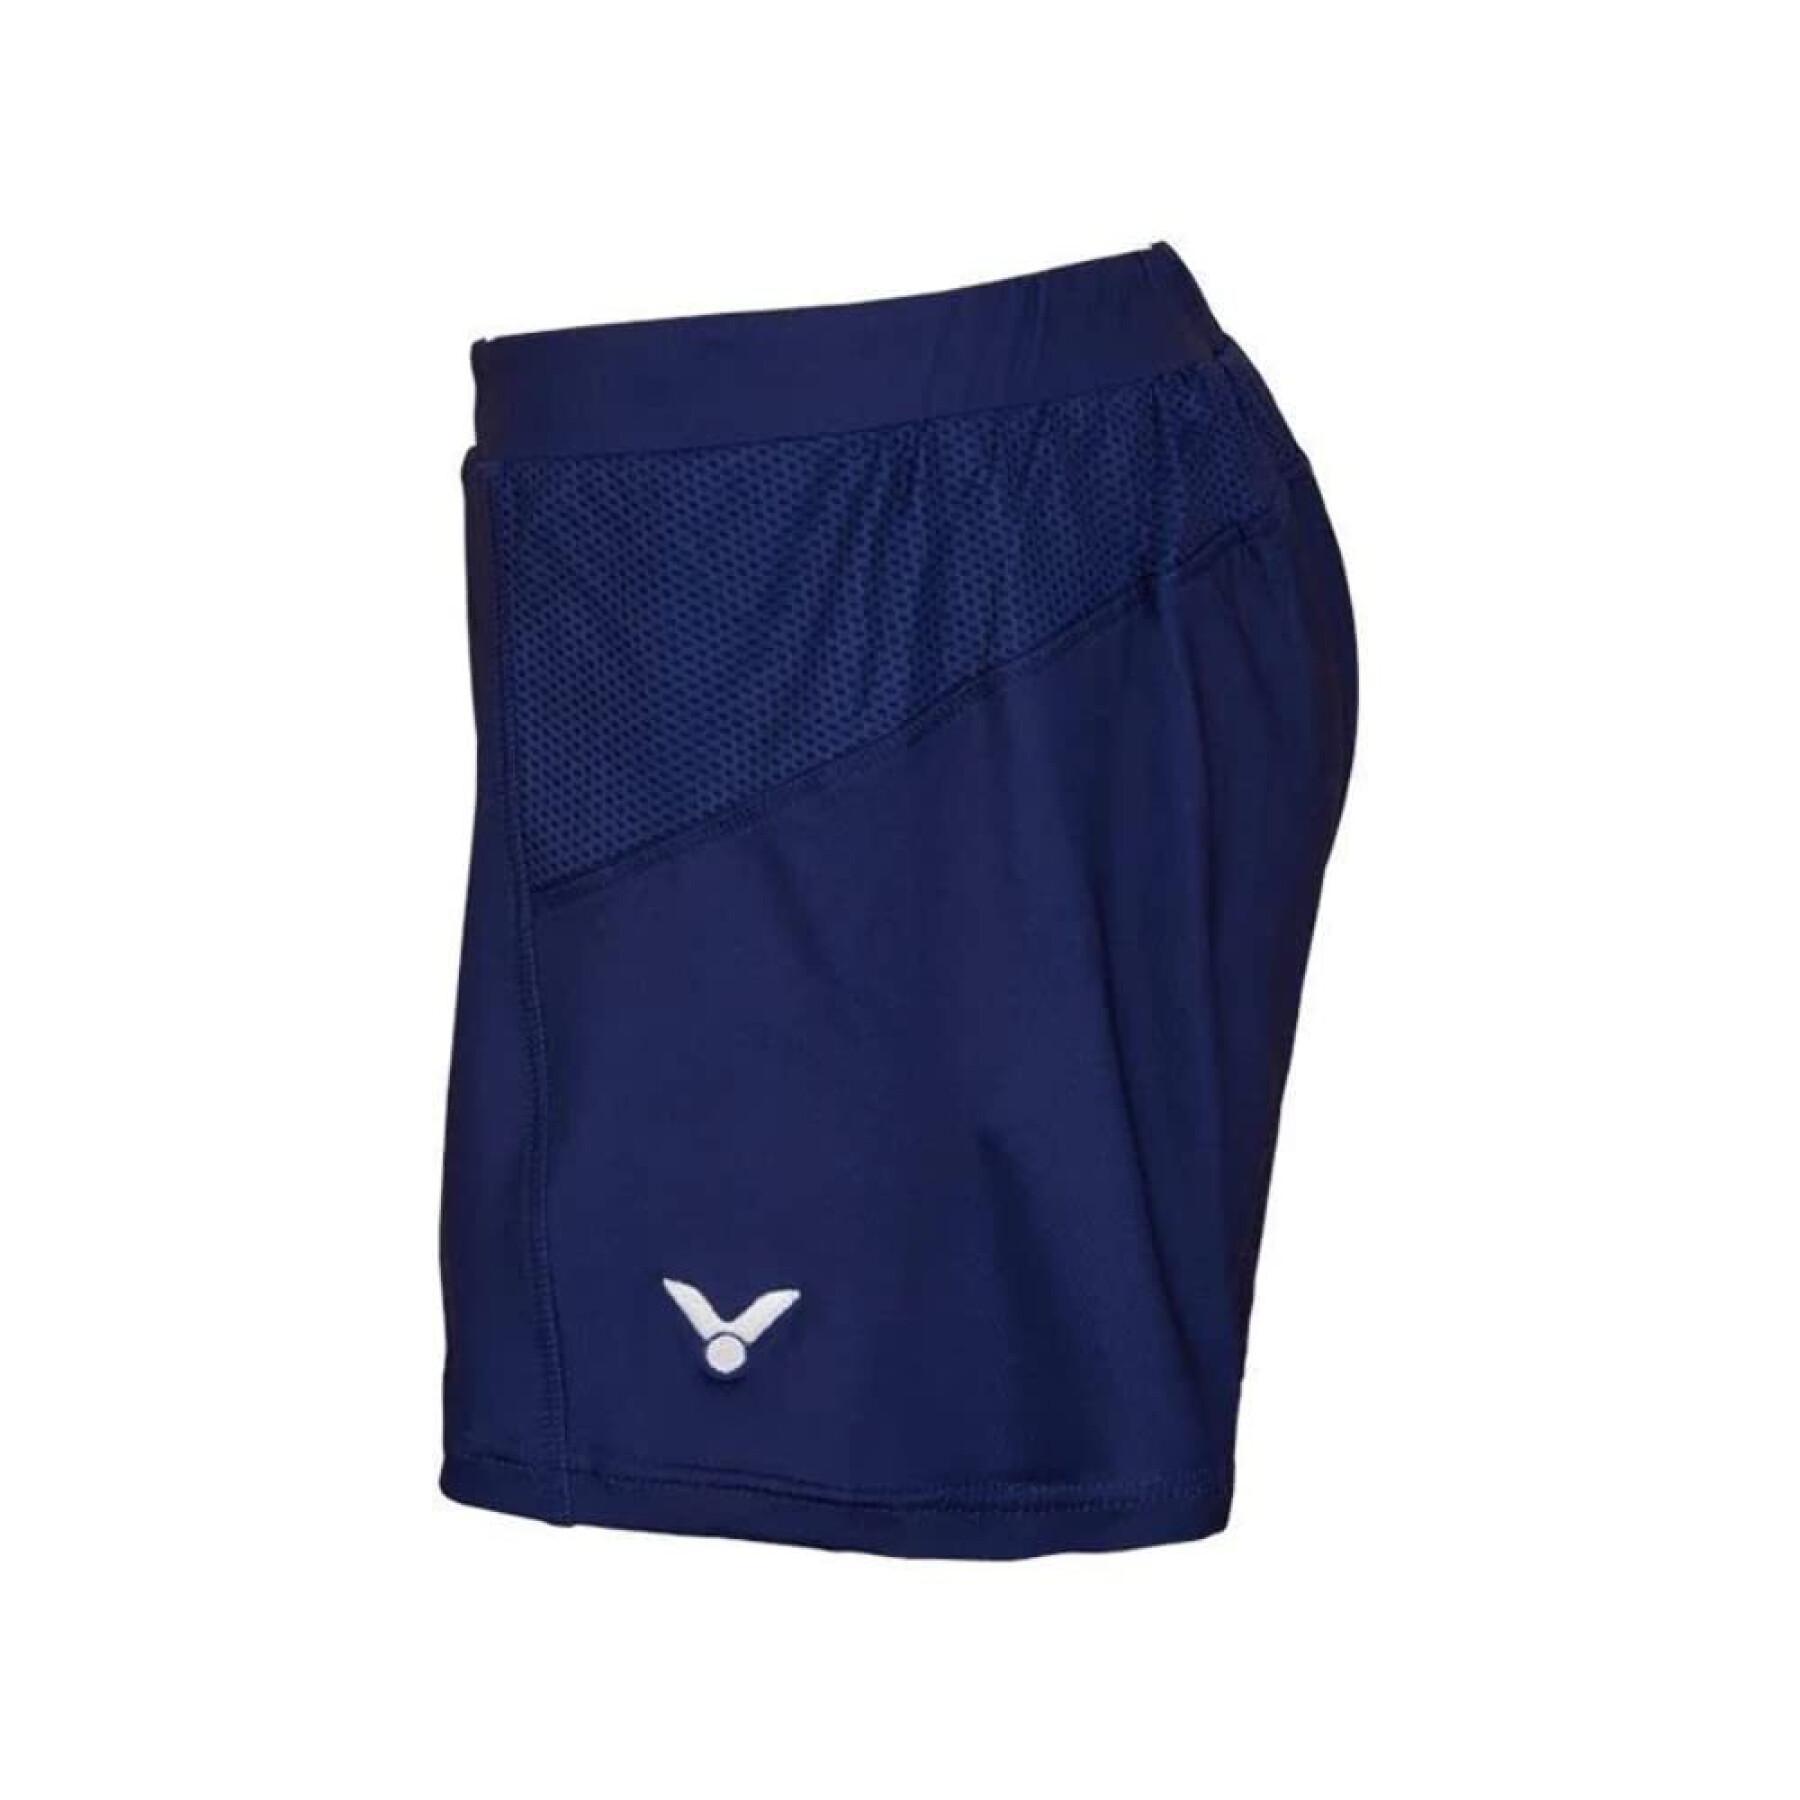 Pantalón corto de mujer Victor R-04200 B